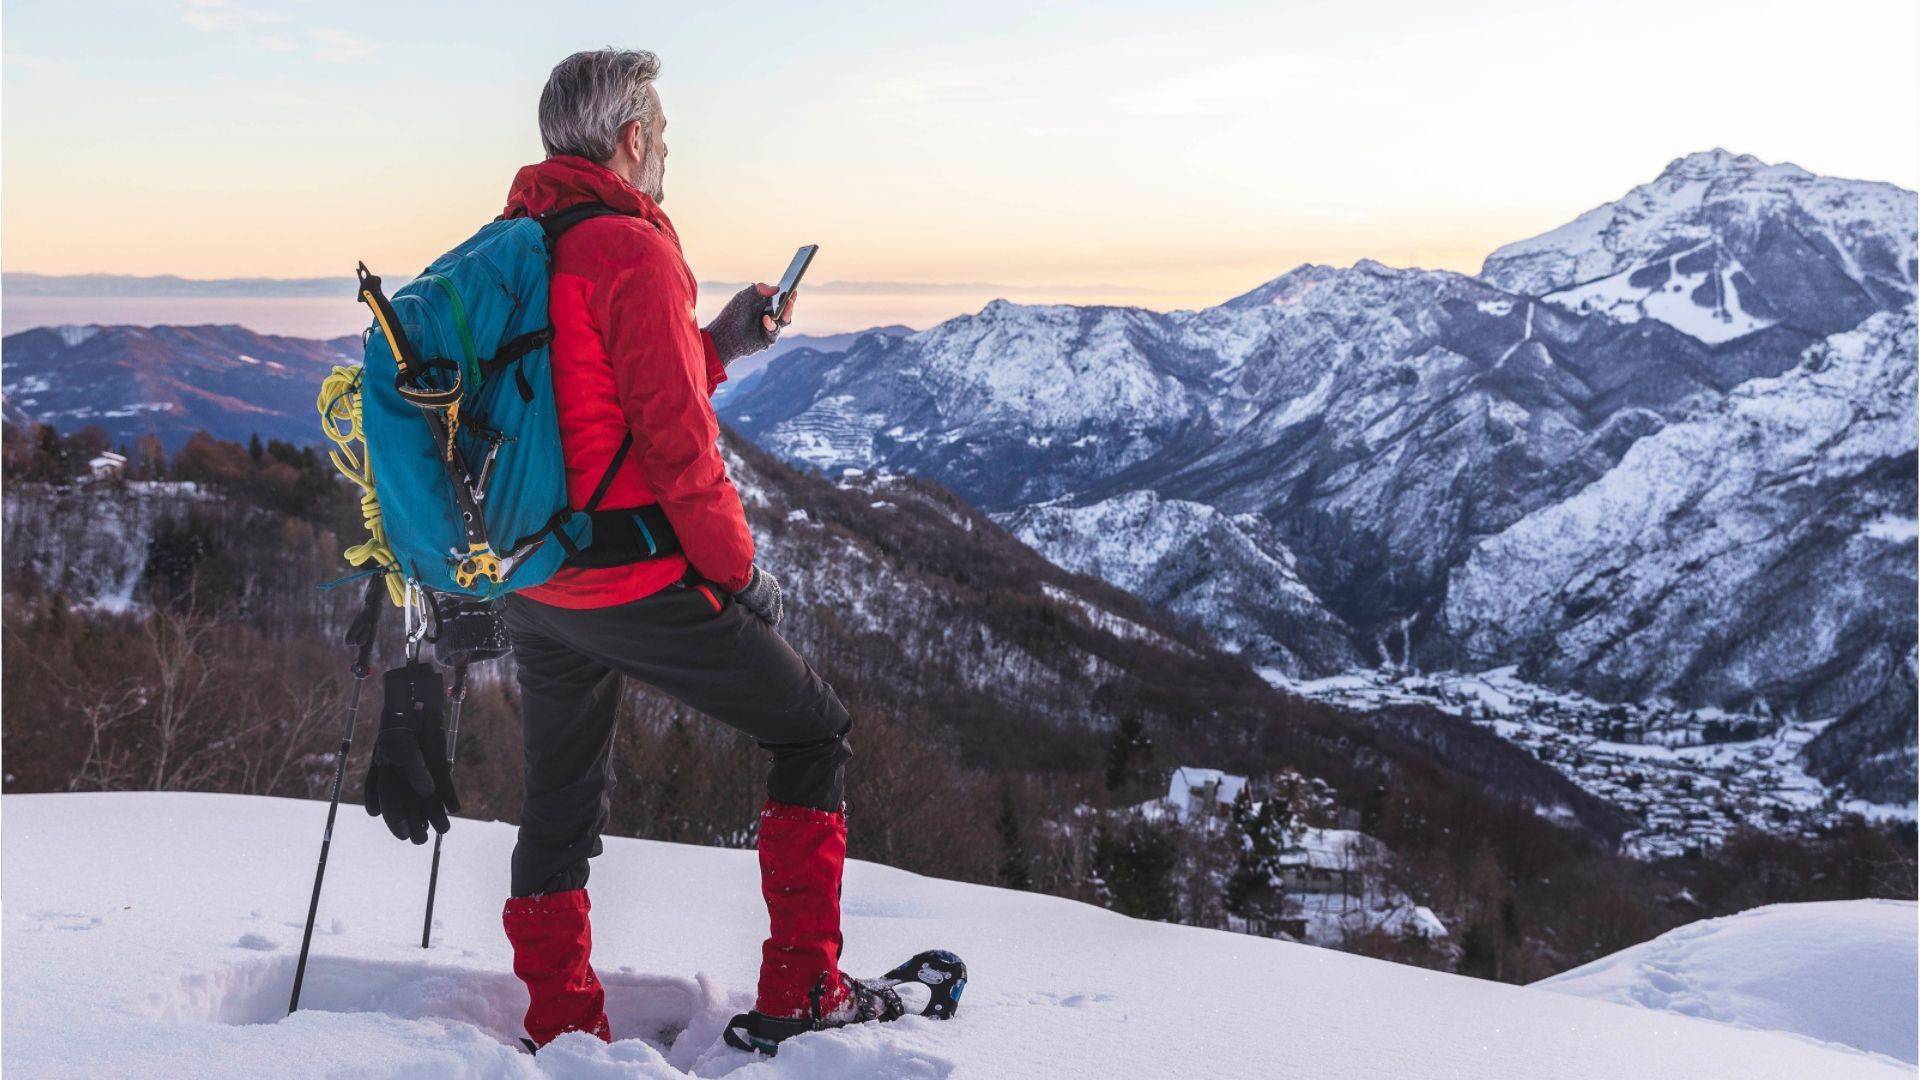 Lawinen, Kälte, Glätte: Lebensgefahr beim Wandern in verschneiten Bergen